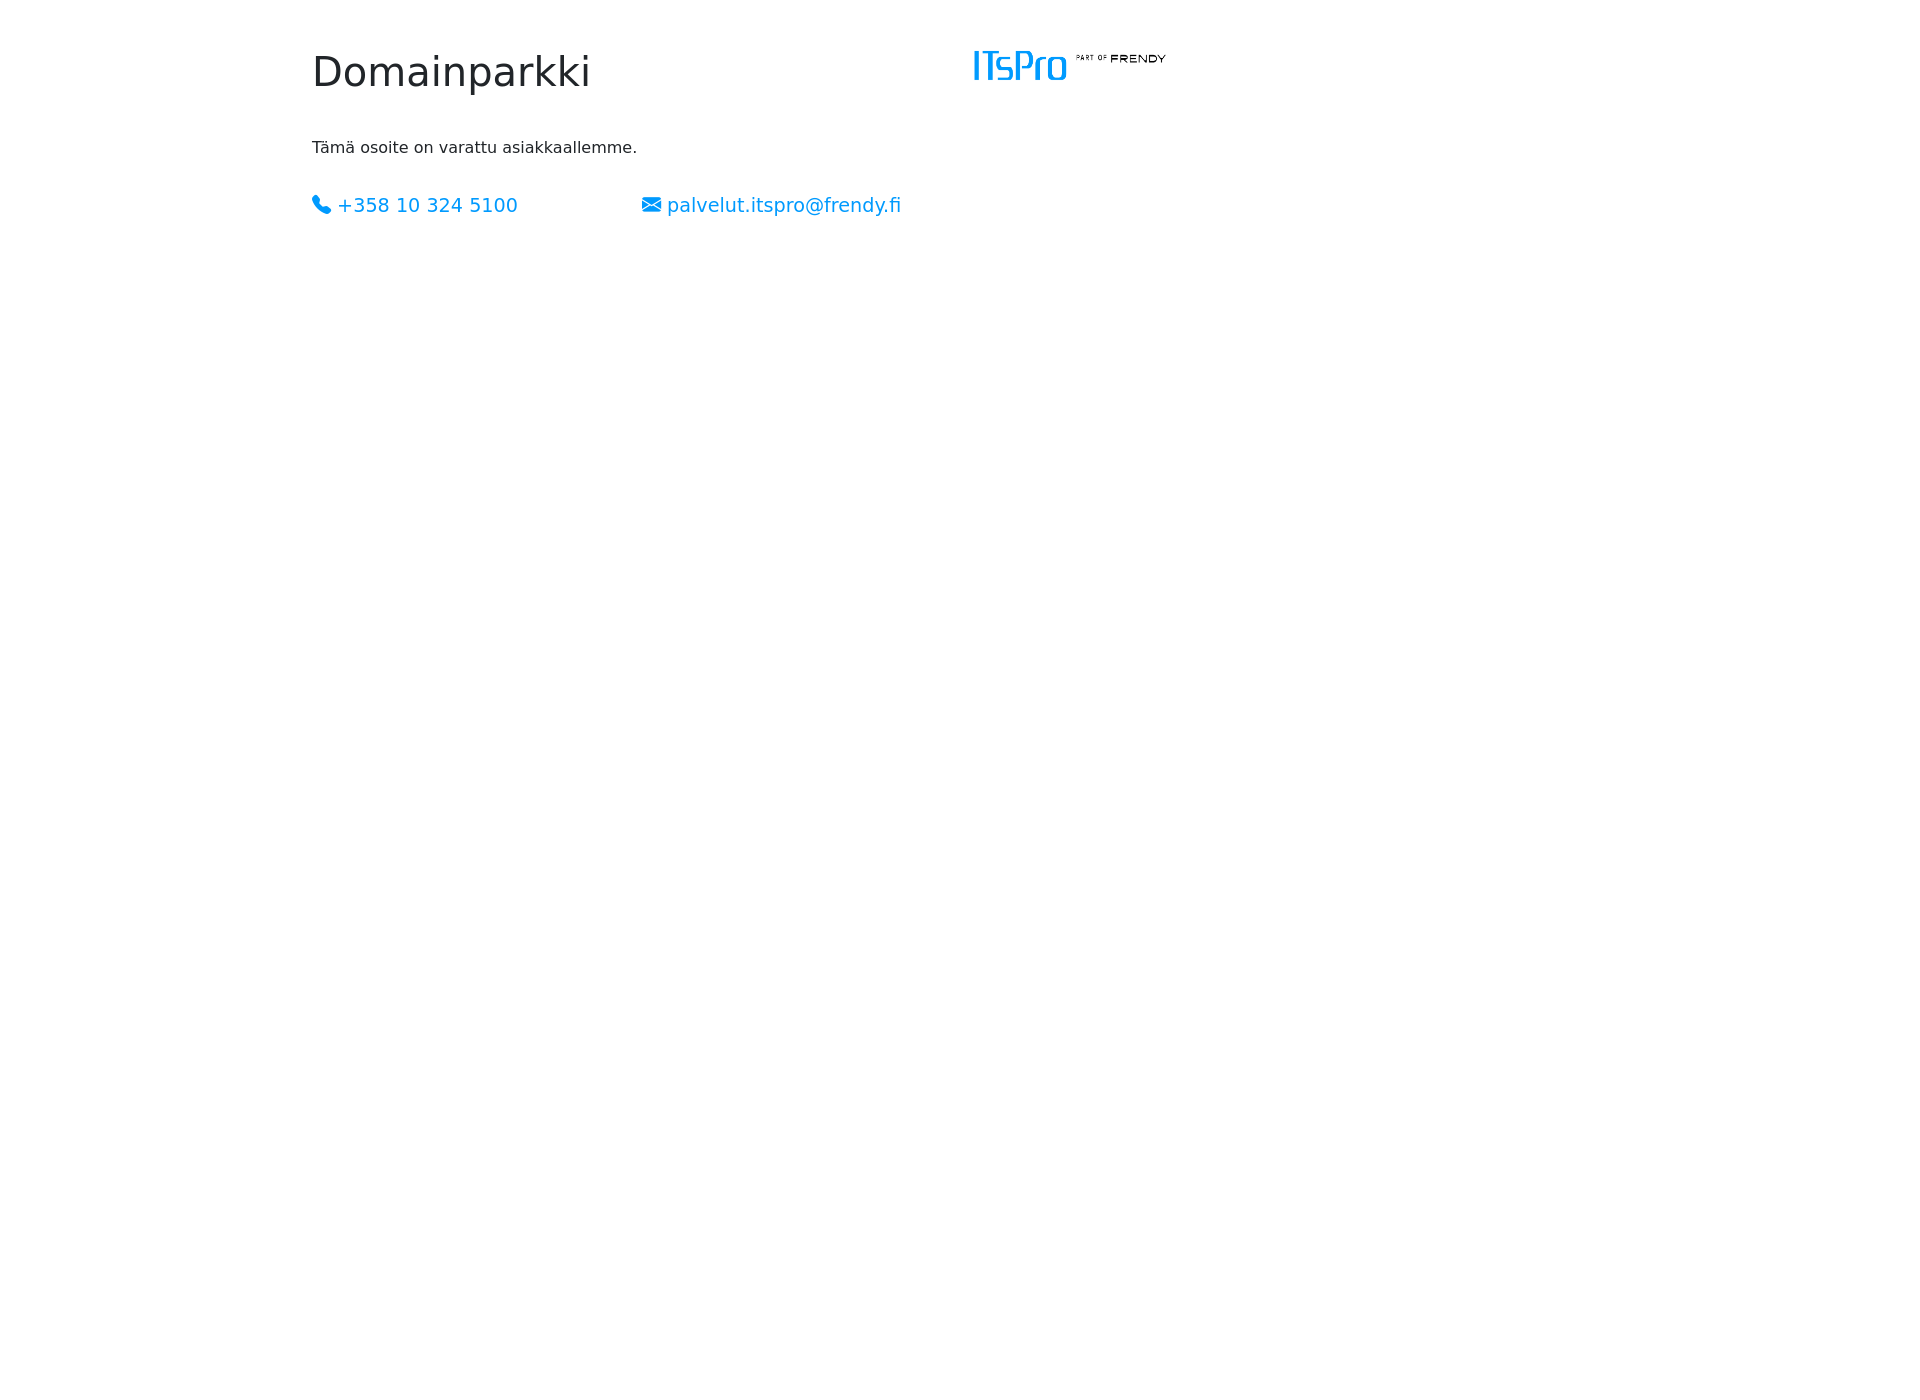 Screenshot for restauranthook.fi